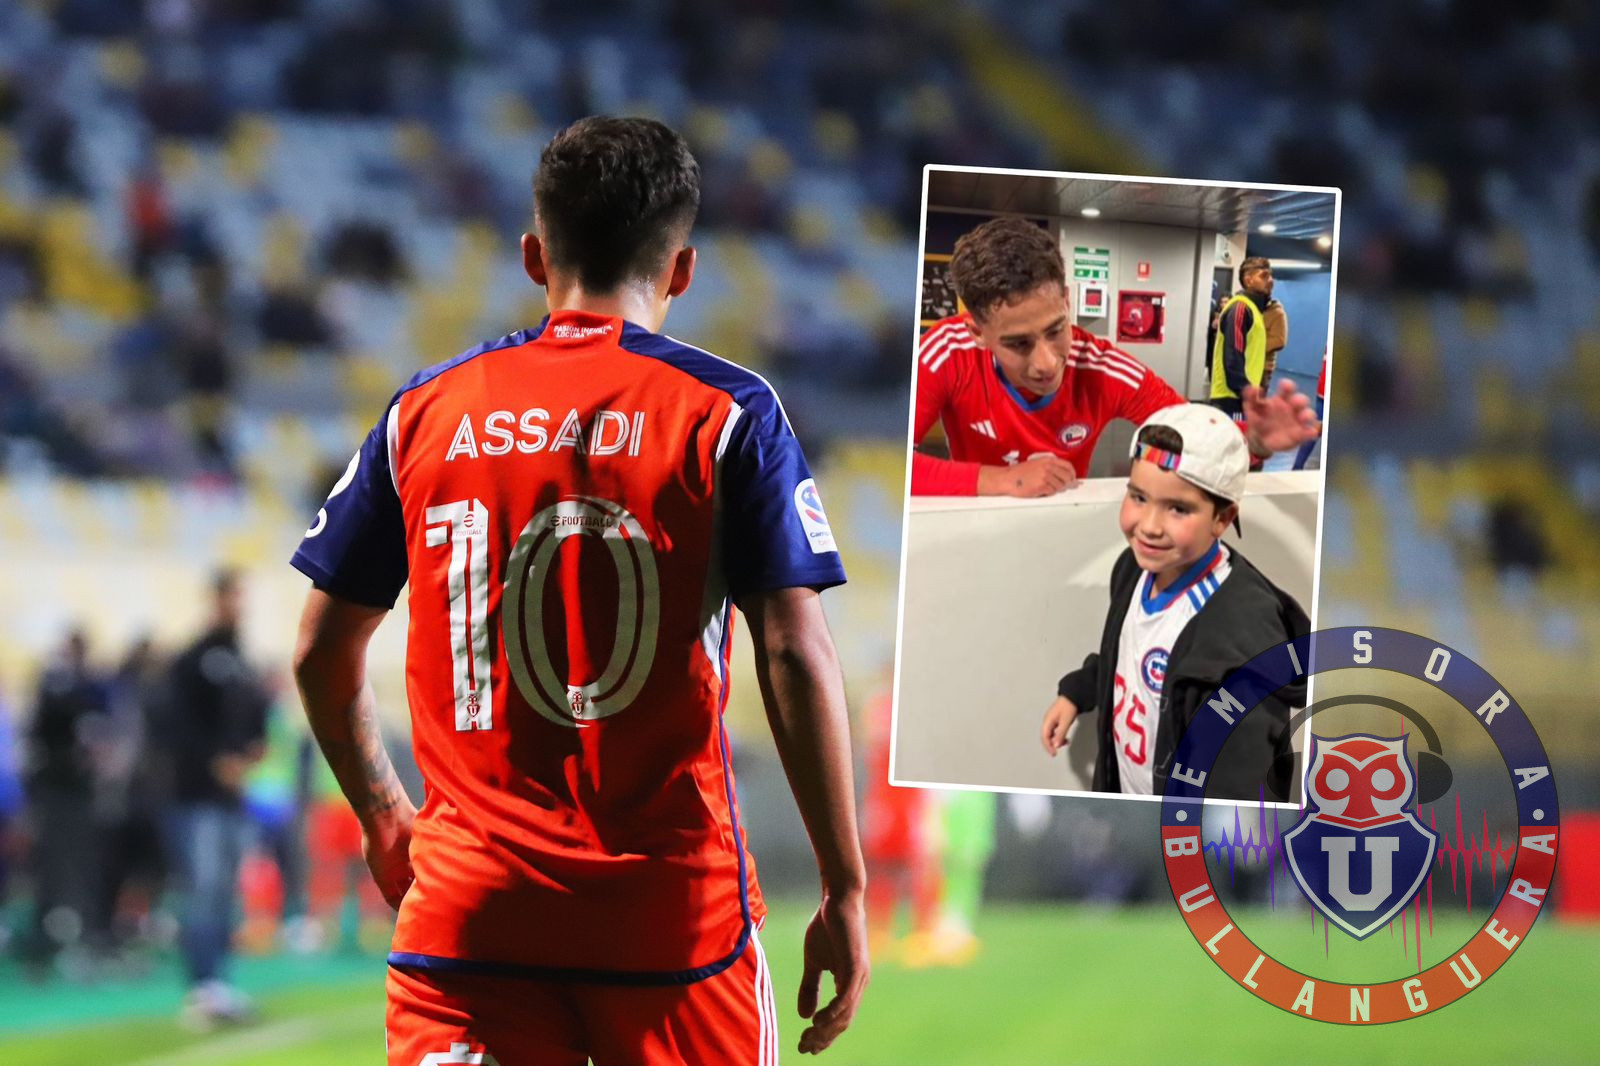 El emotivo gesto de Lucas Assadi con el hijo de una leyenda de la U